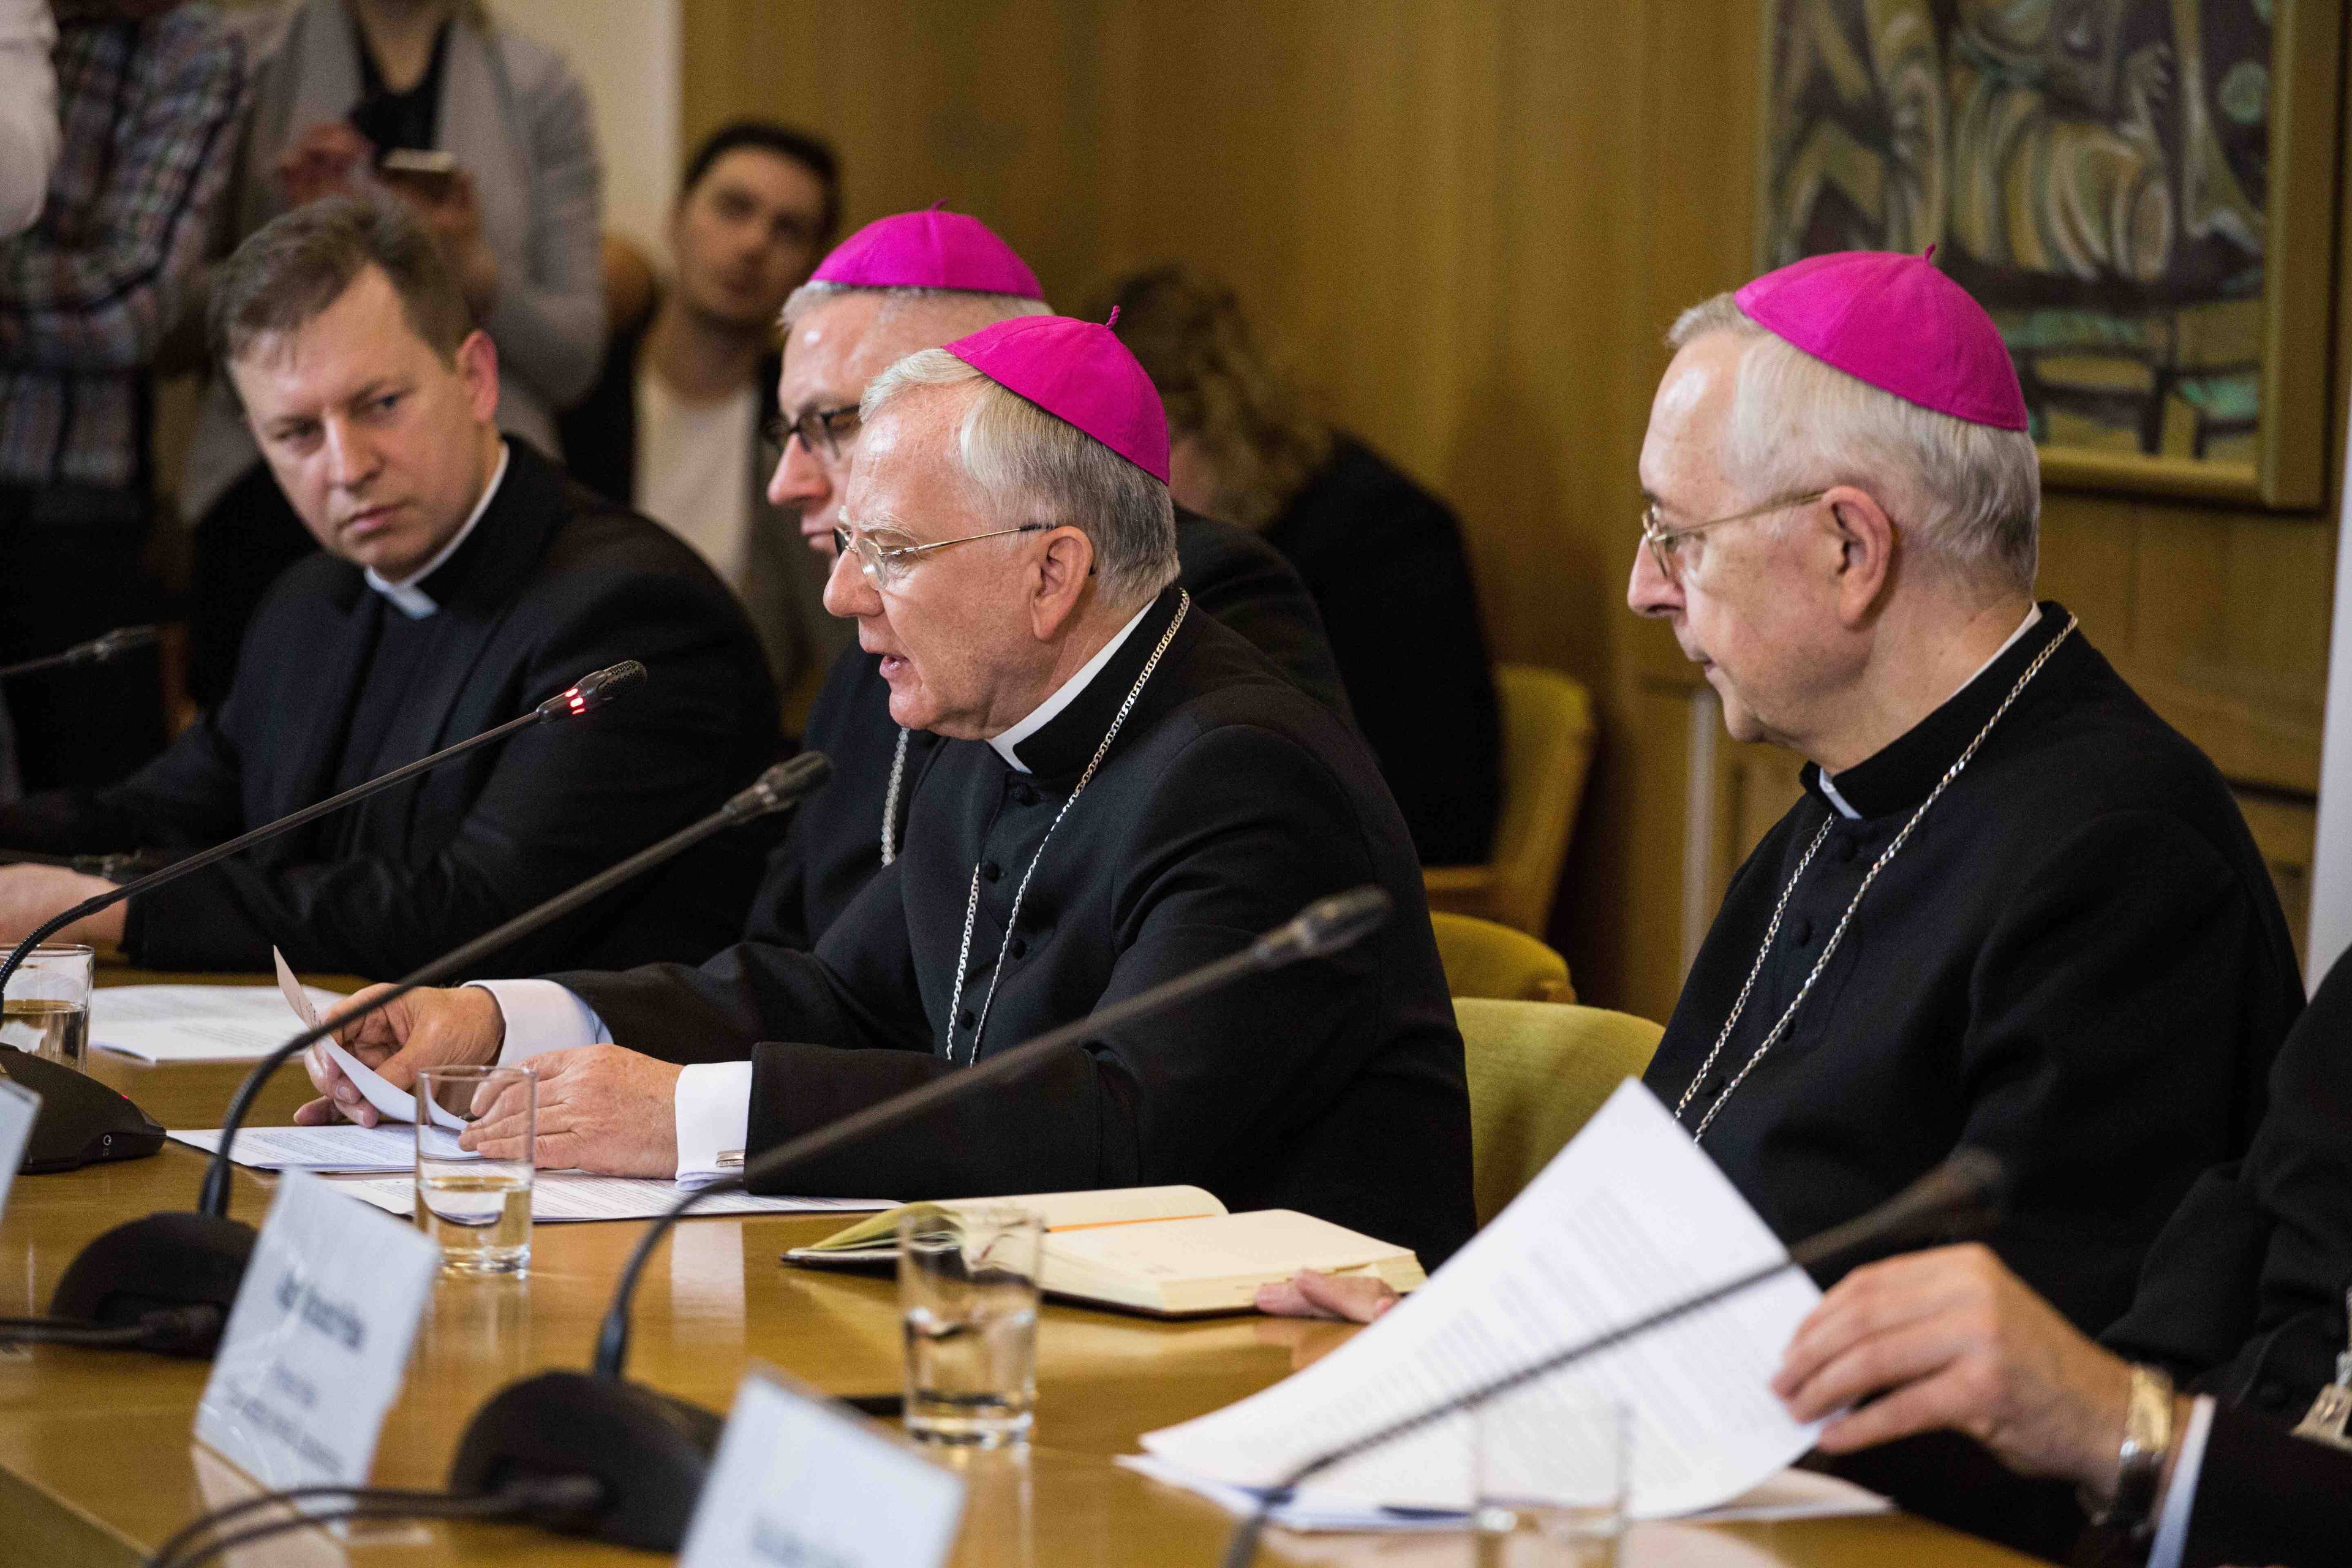 Trzech biskupów siedzi przy stole podczas konferencji prasowej. Episkopat